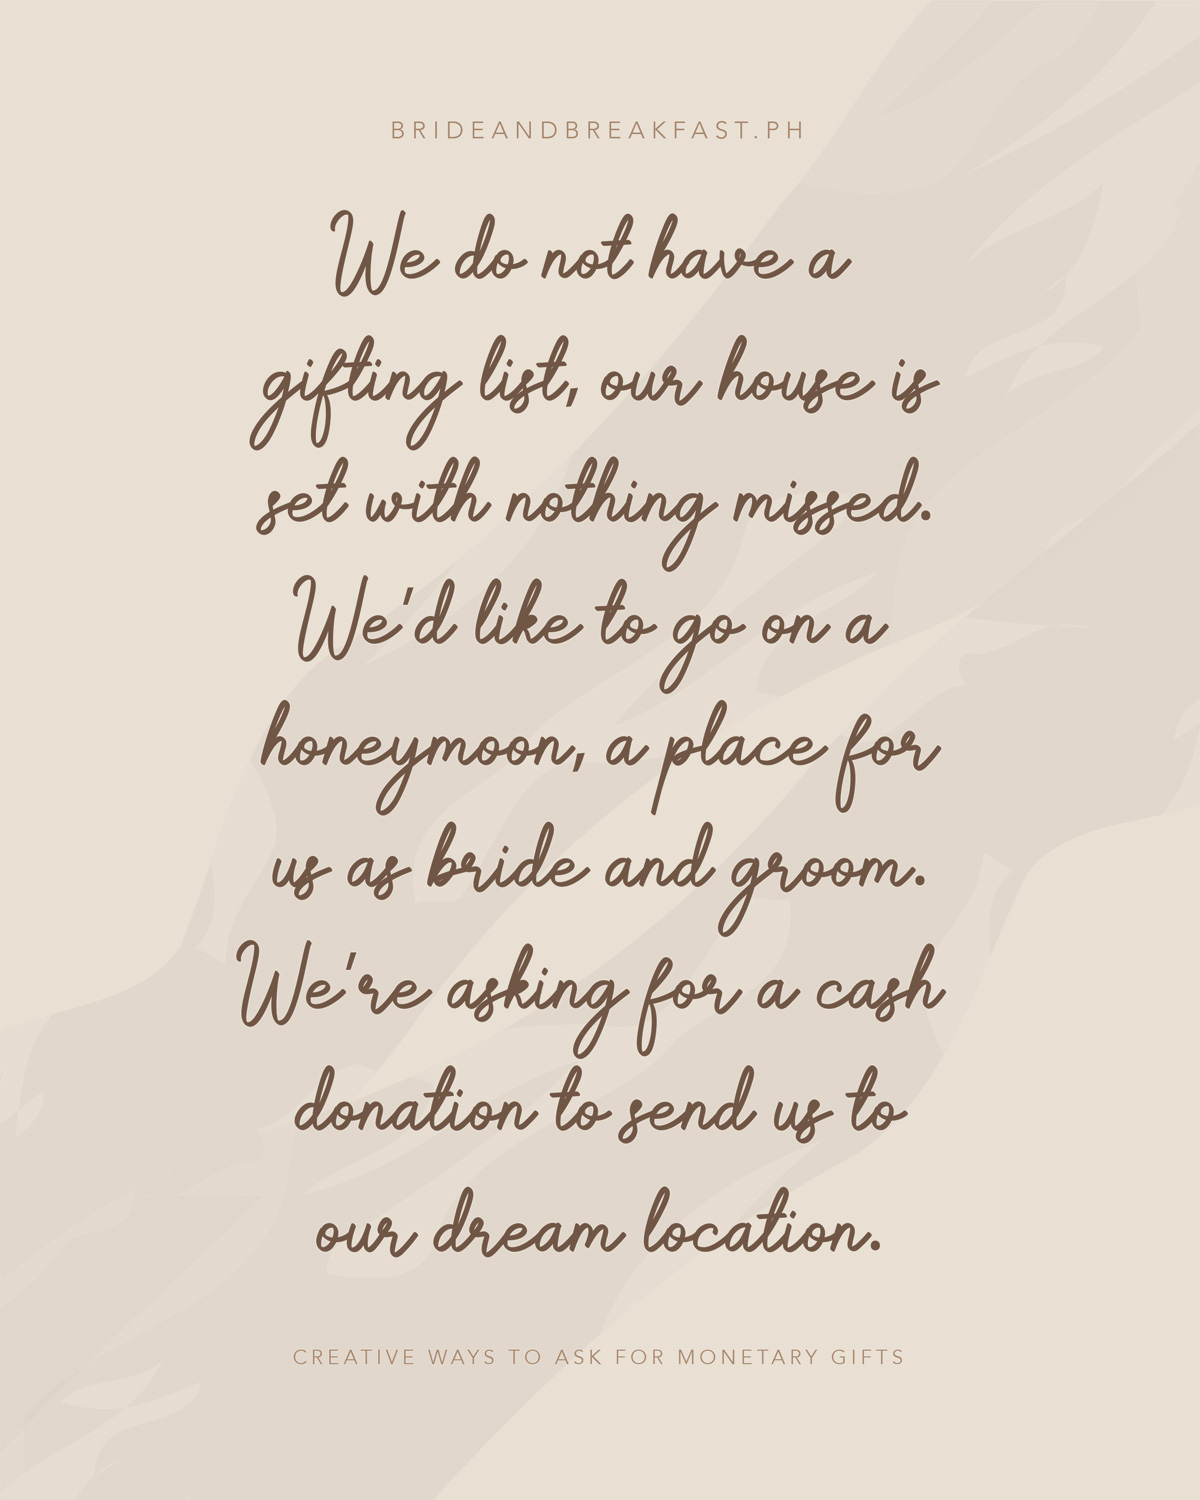  Nous n'avons pas de liste de cadeaux, notre maison est réglée sans rien manquer. Nous aimerions aller en lune de miel un endroit pour nous en tant que mariés. Nous demandons un don en espèces pour nous envoyer à l'endroit de nos rêves.